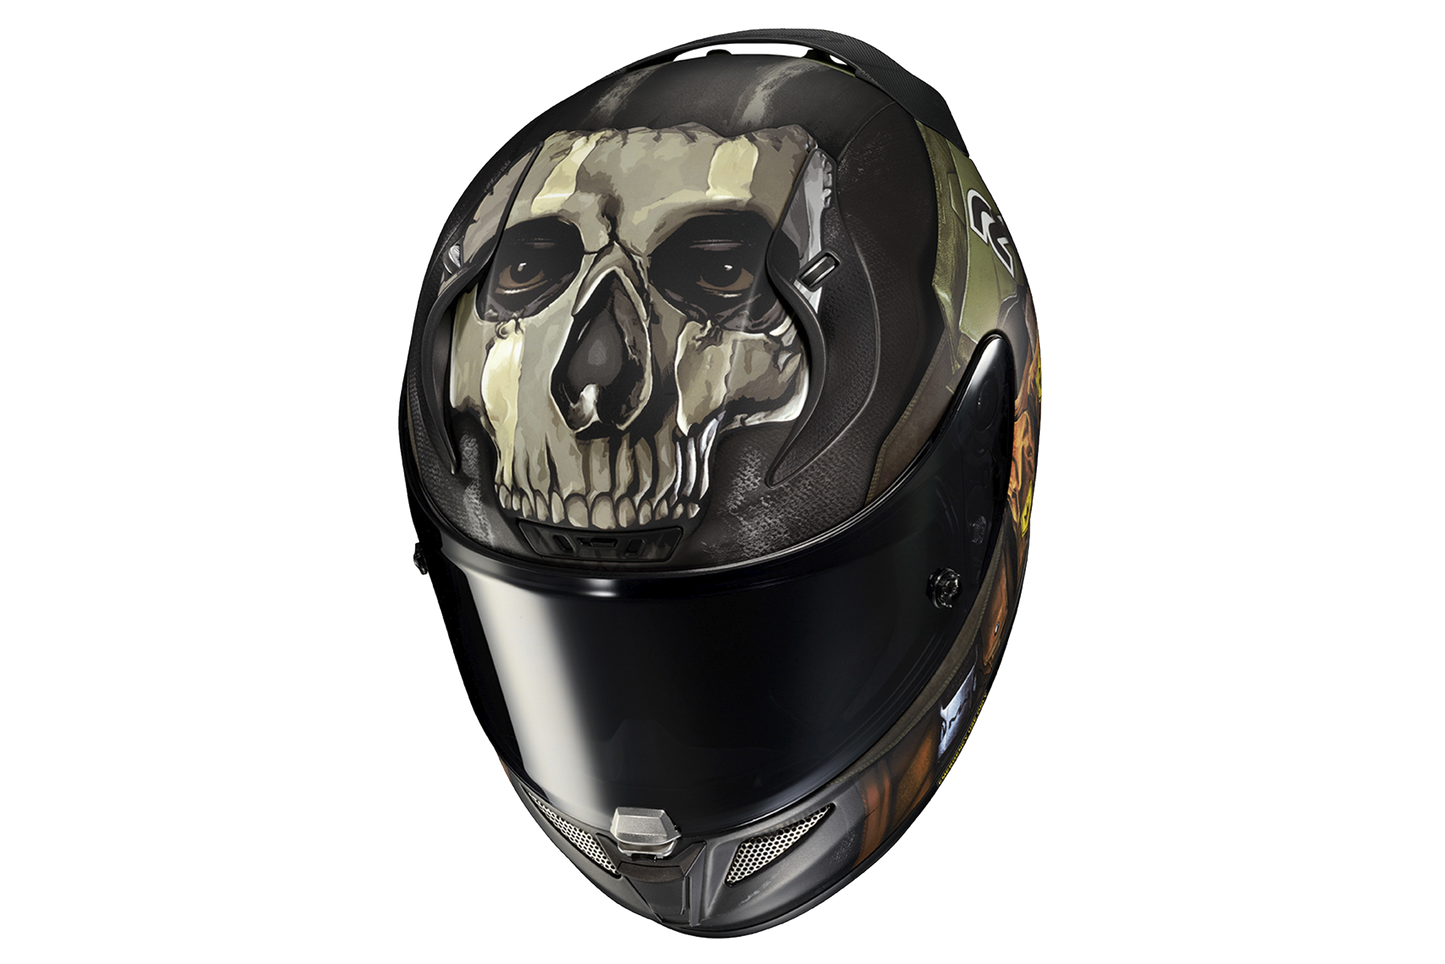 Hjc Rpha 11 Ghost Call Of Duty helmet